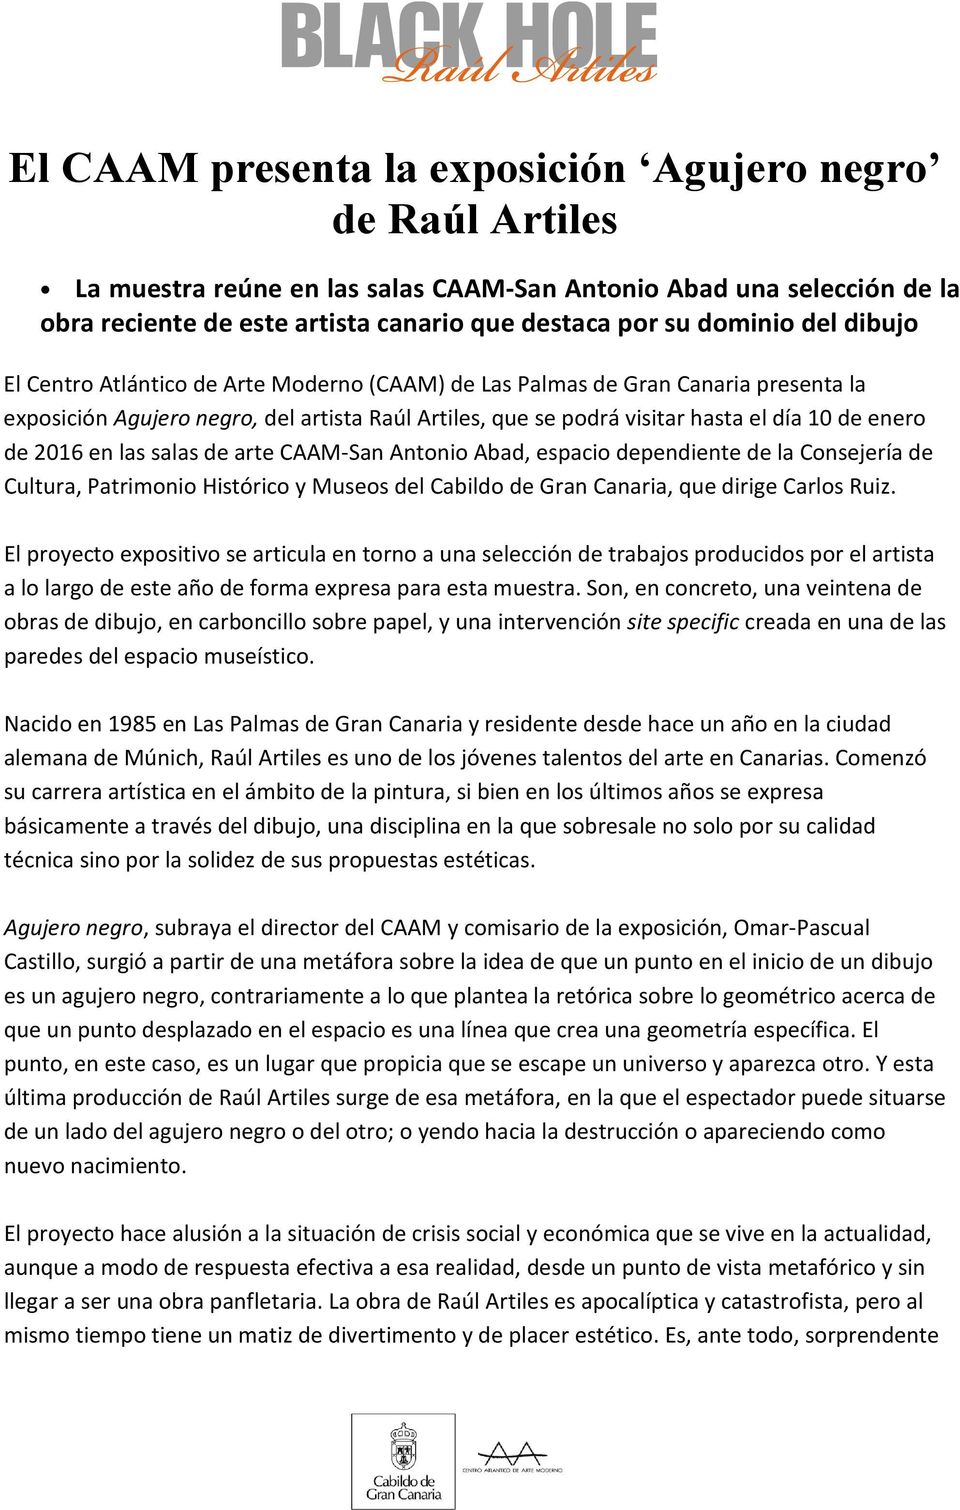 2016 en las salas de arte CAAM-San Antonio Abad, espacio dependiente de la Consejería de Cultura, Patrimonio Histórico y Museos del Cabildo de Gran Canaria, que dirige Carlos Ruiz.